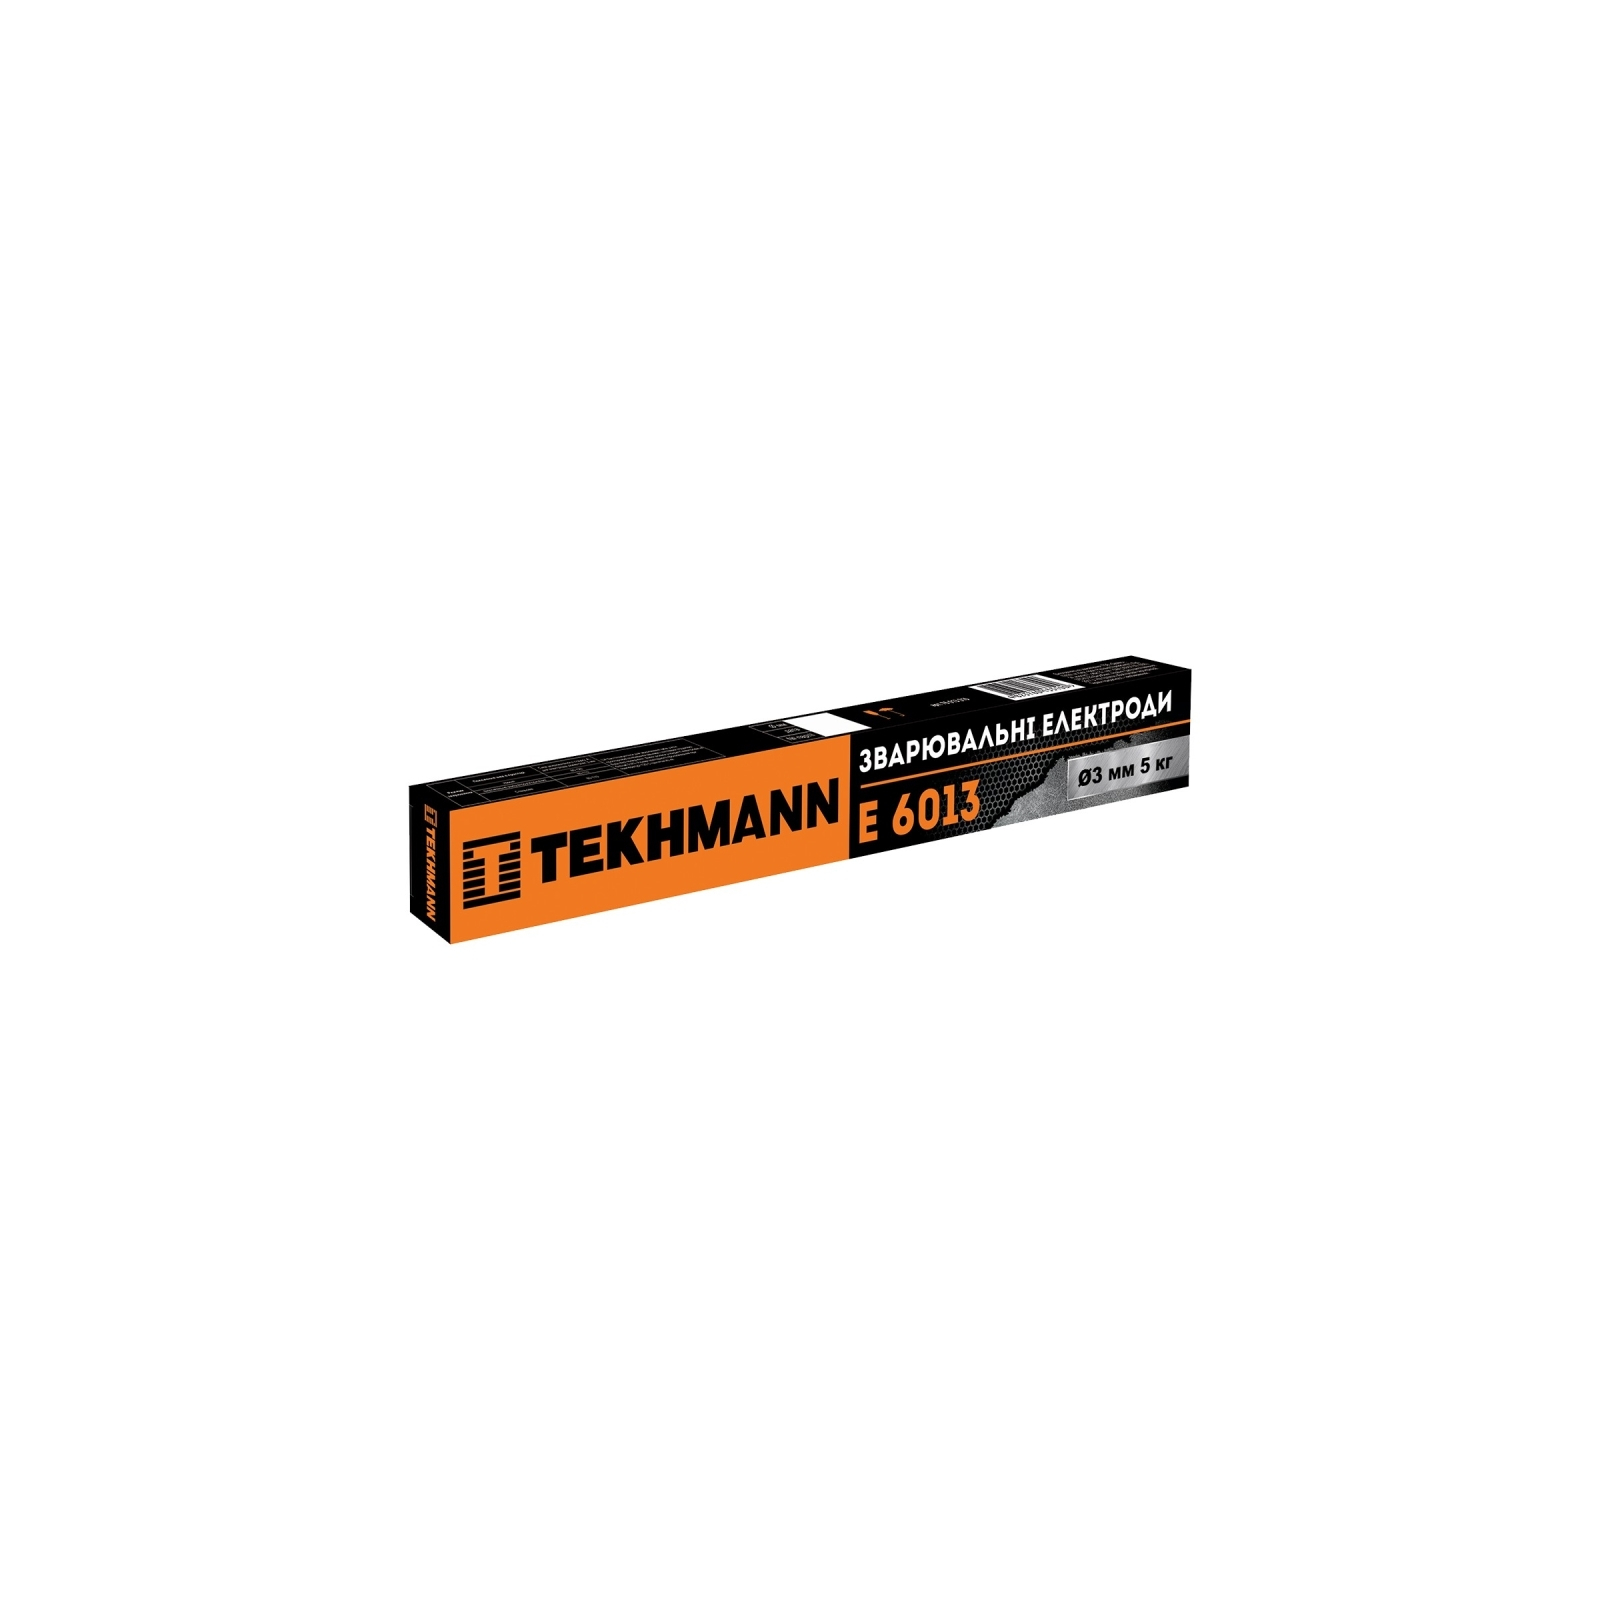 Электроды Tekhmann E 6013 d 3 мм. Х 5 кг. (76013350)